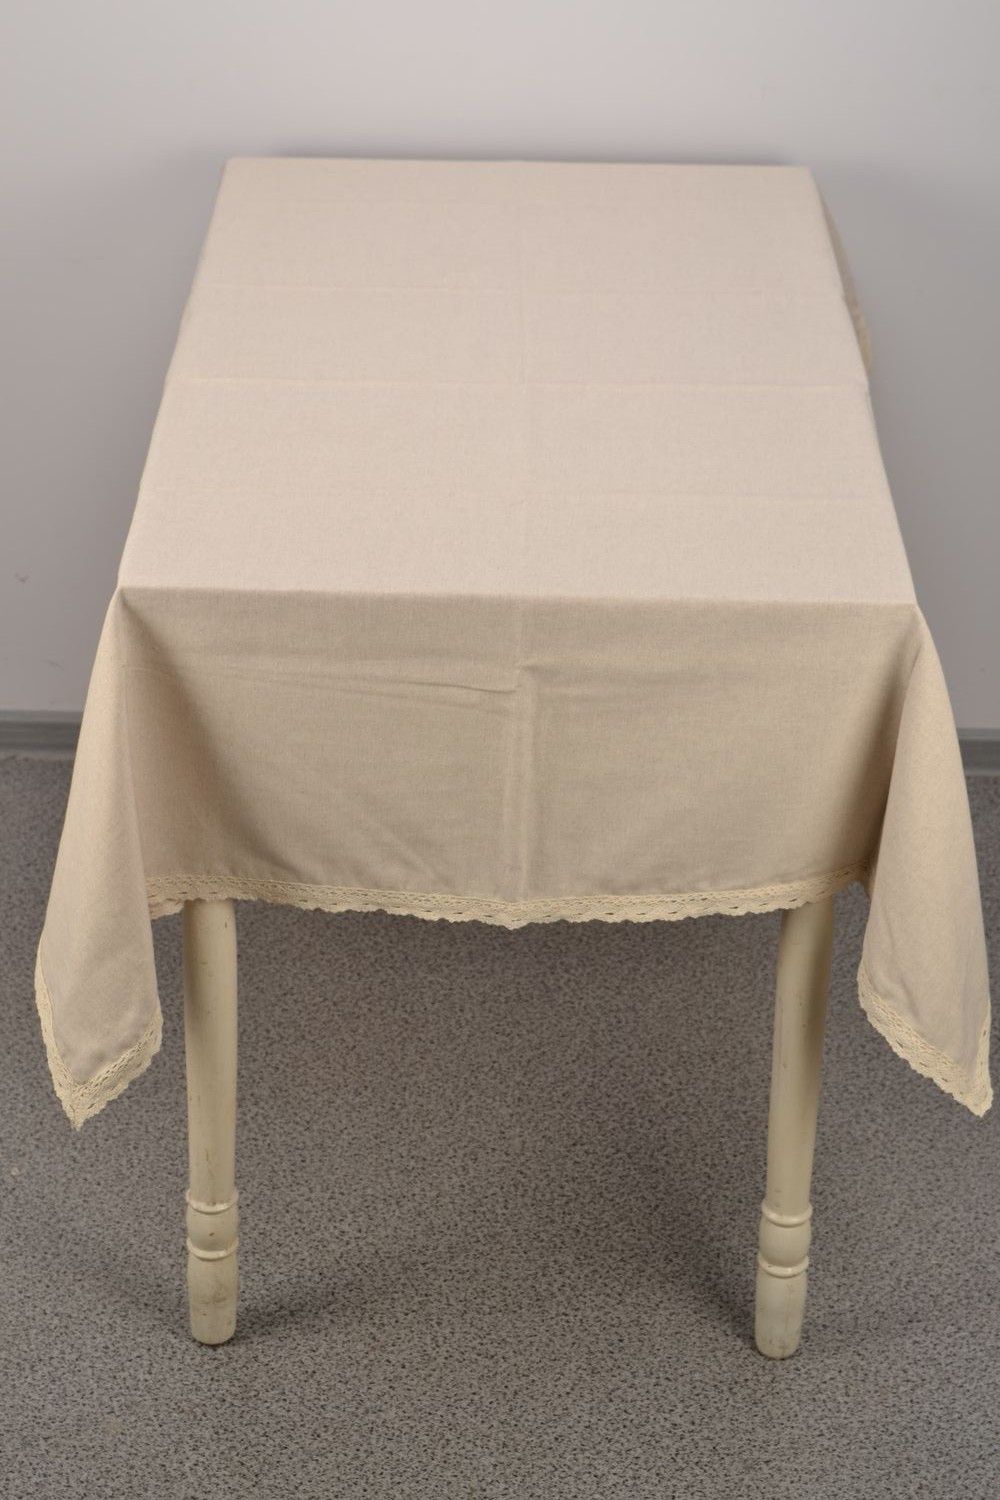 Mantel de tela con encaje para mesa rectangular foto 2